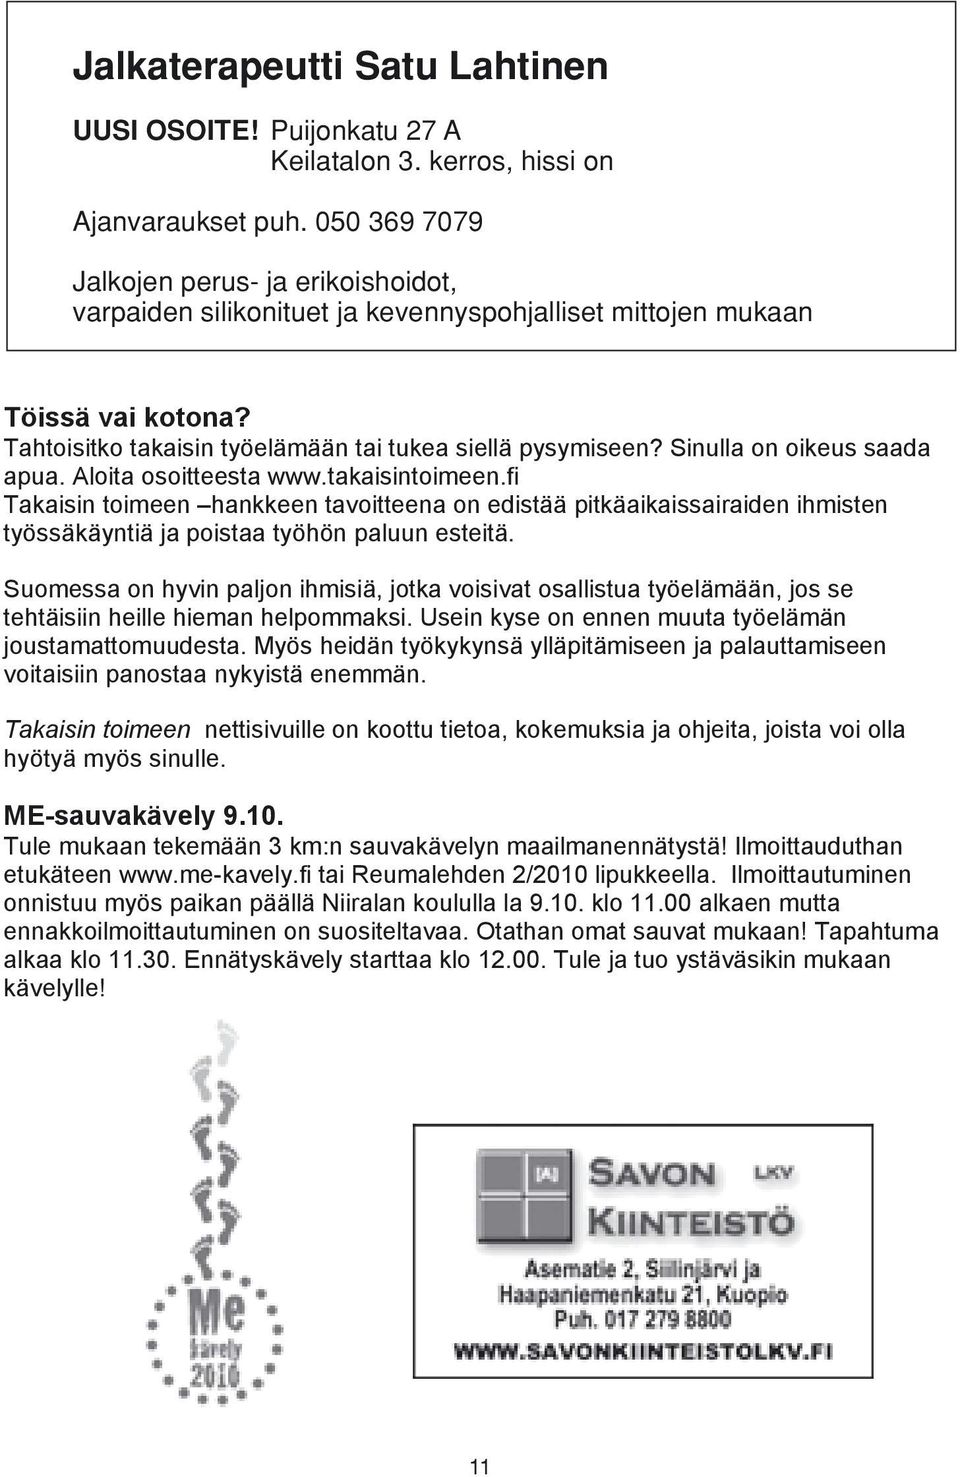 Sinulla on oikeus saada apua. Aloita osoitteesta www.takaisintoimeen.fi Takaisin toimeen hankkeen tavoitteena on edistää pitkäaikaissairaiden ihmisten työssäkäyntiä ja poistaa työhön paluun esteitä.